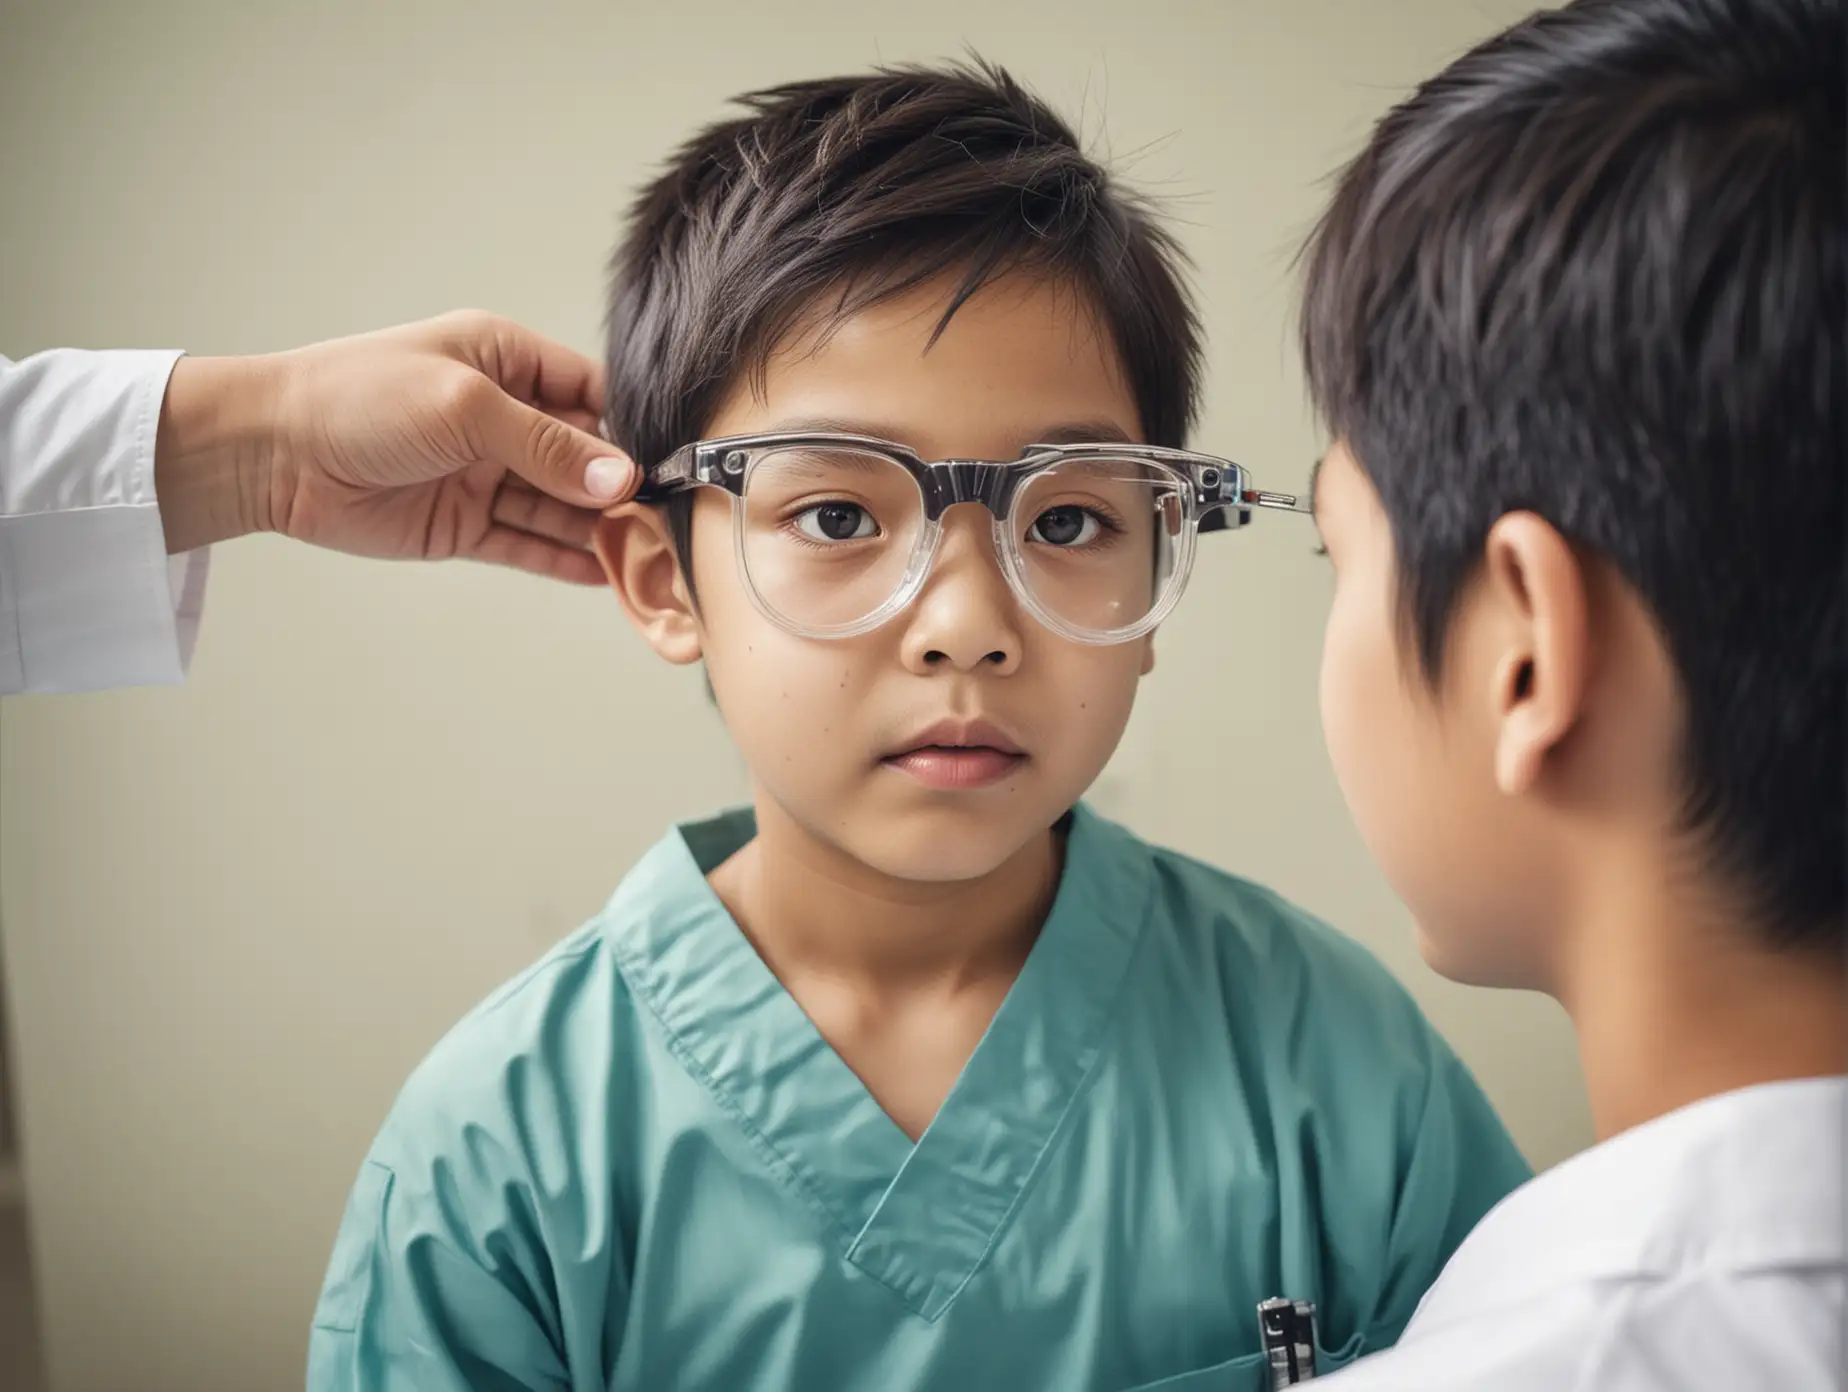 Sketch-Style-Asian-Boy-in-Hospital-Getting-Eyesight-Test